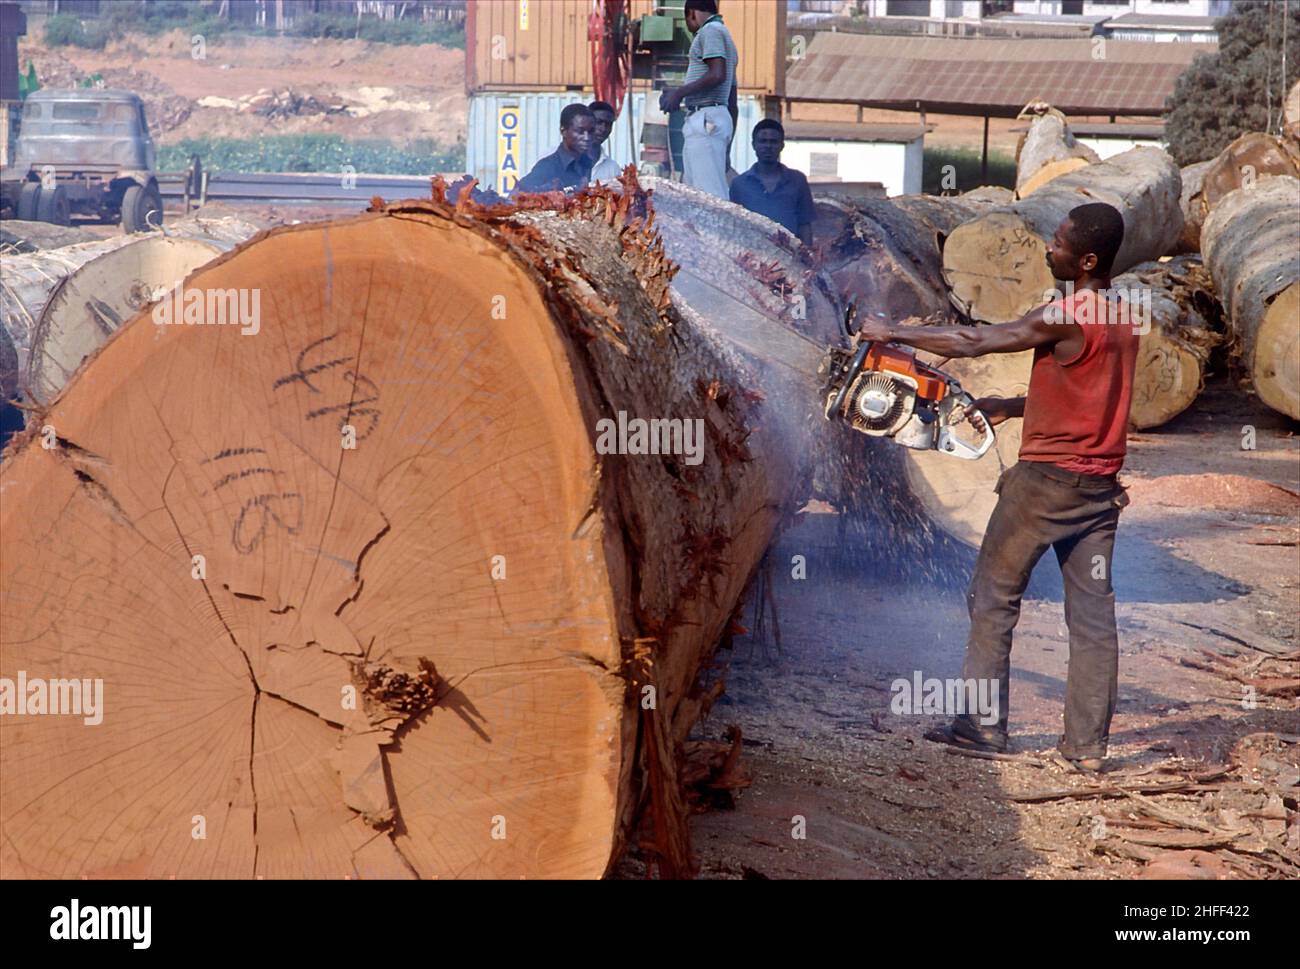 Sägearbeiter schneidet in einem Sägewerk in Ghana, Westafrika, Baumstämme. Stockfoto